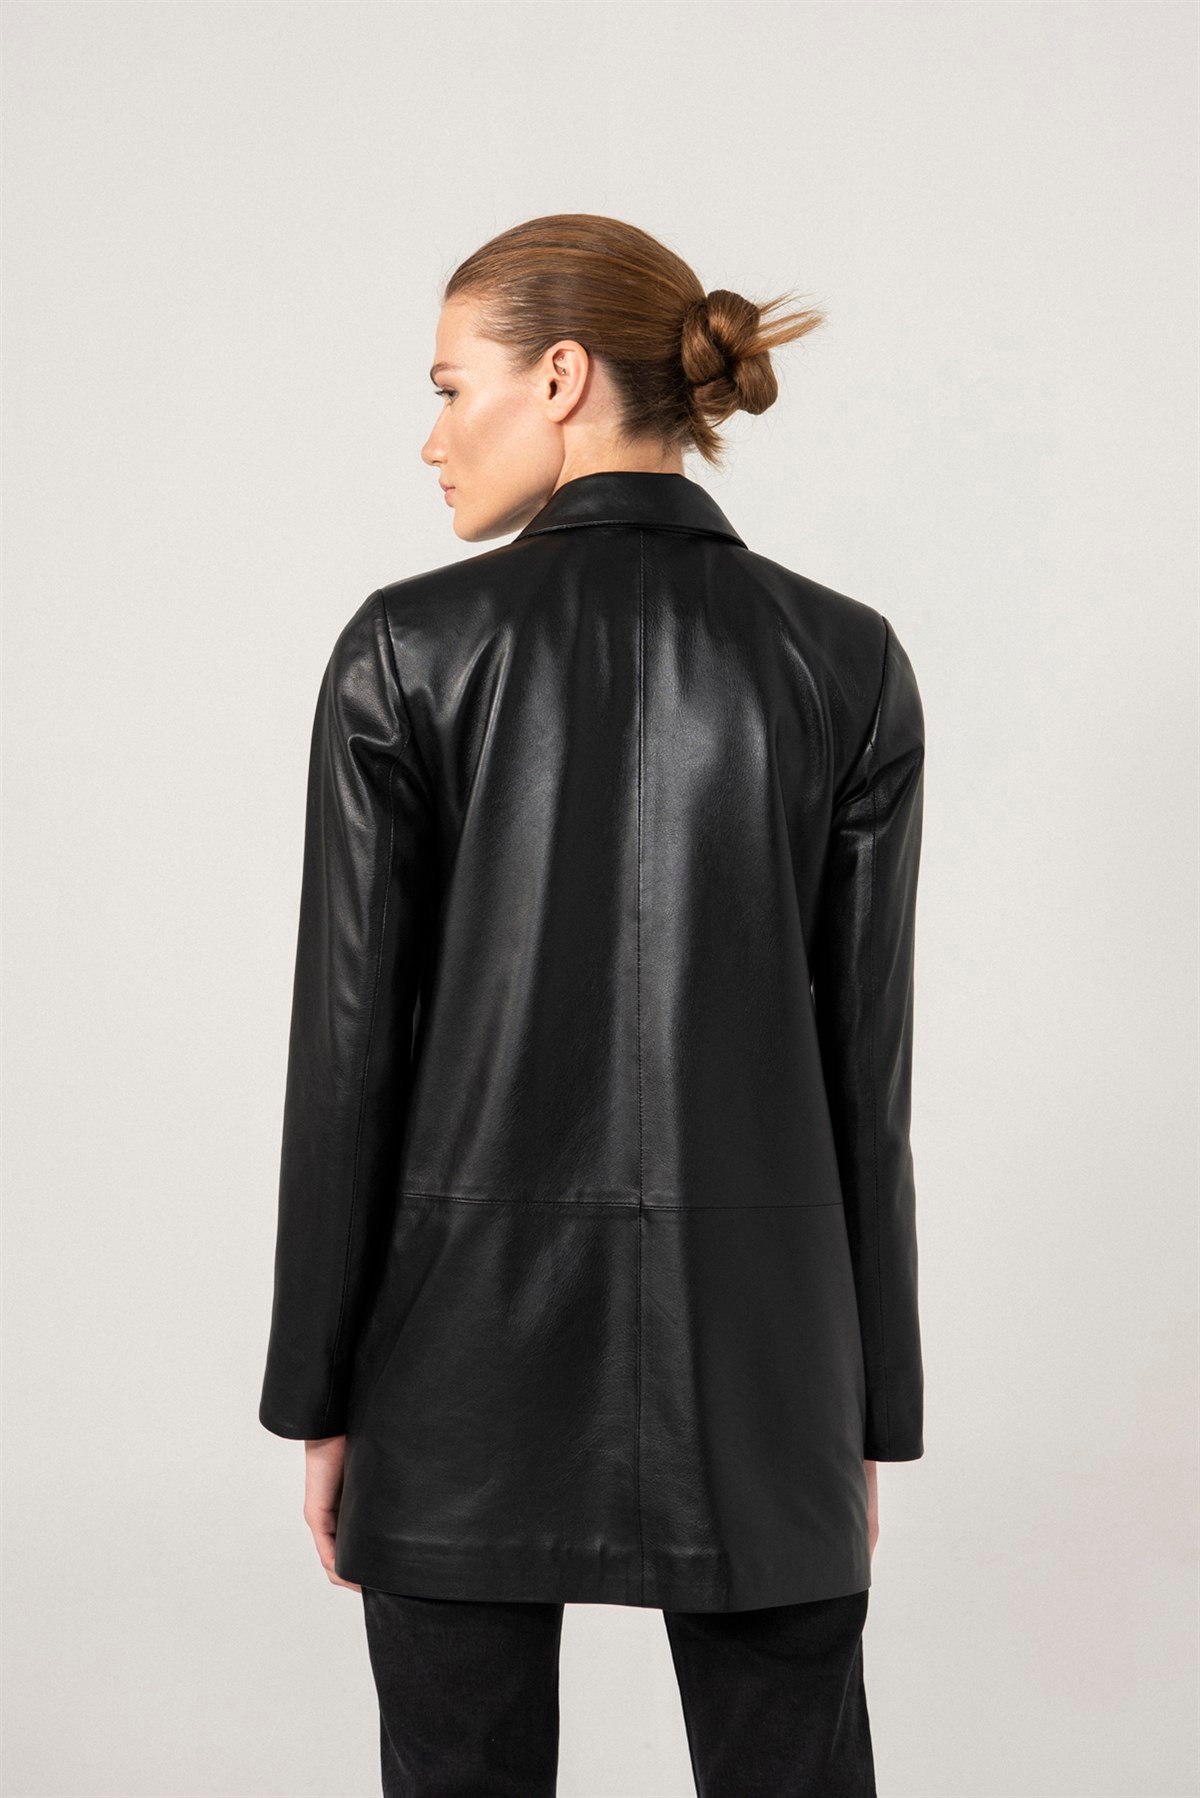 ZOE Siyah Deri Kruvaze Blazer Ceket Kadın Deri Ceket Modelleri